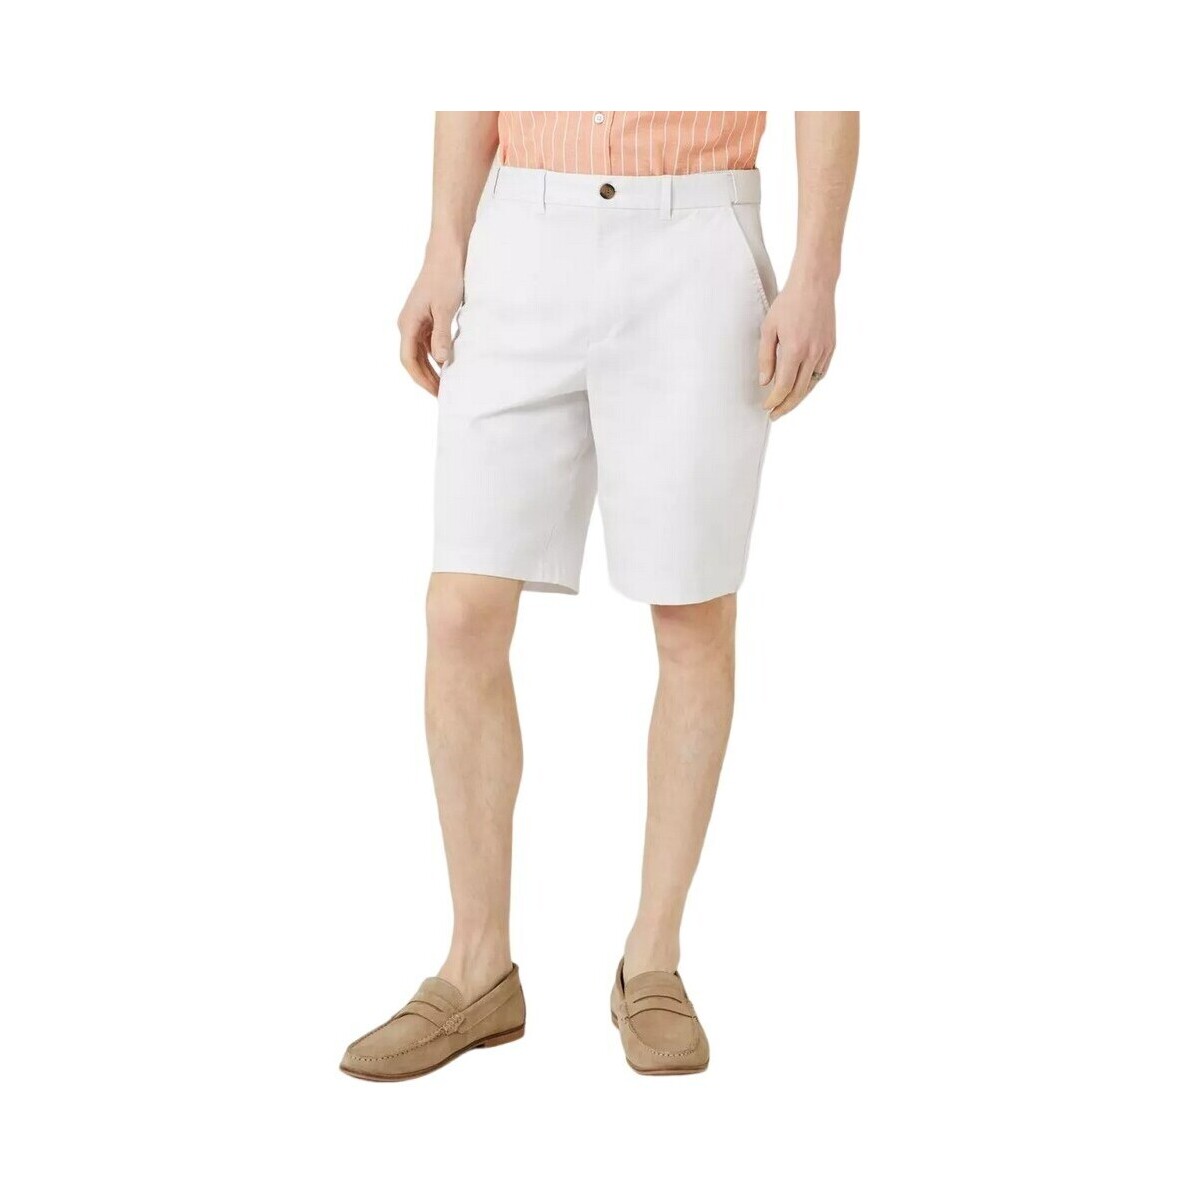 Vêtements Homme Shorts / Bermudas Maine Premium Blanc